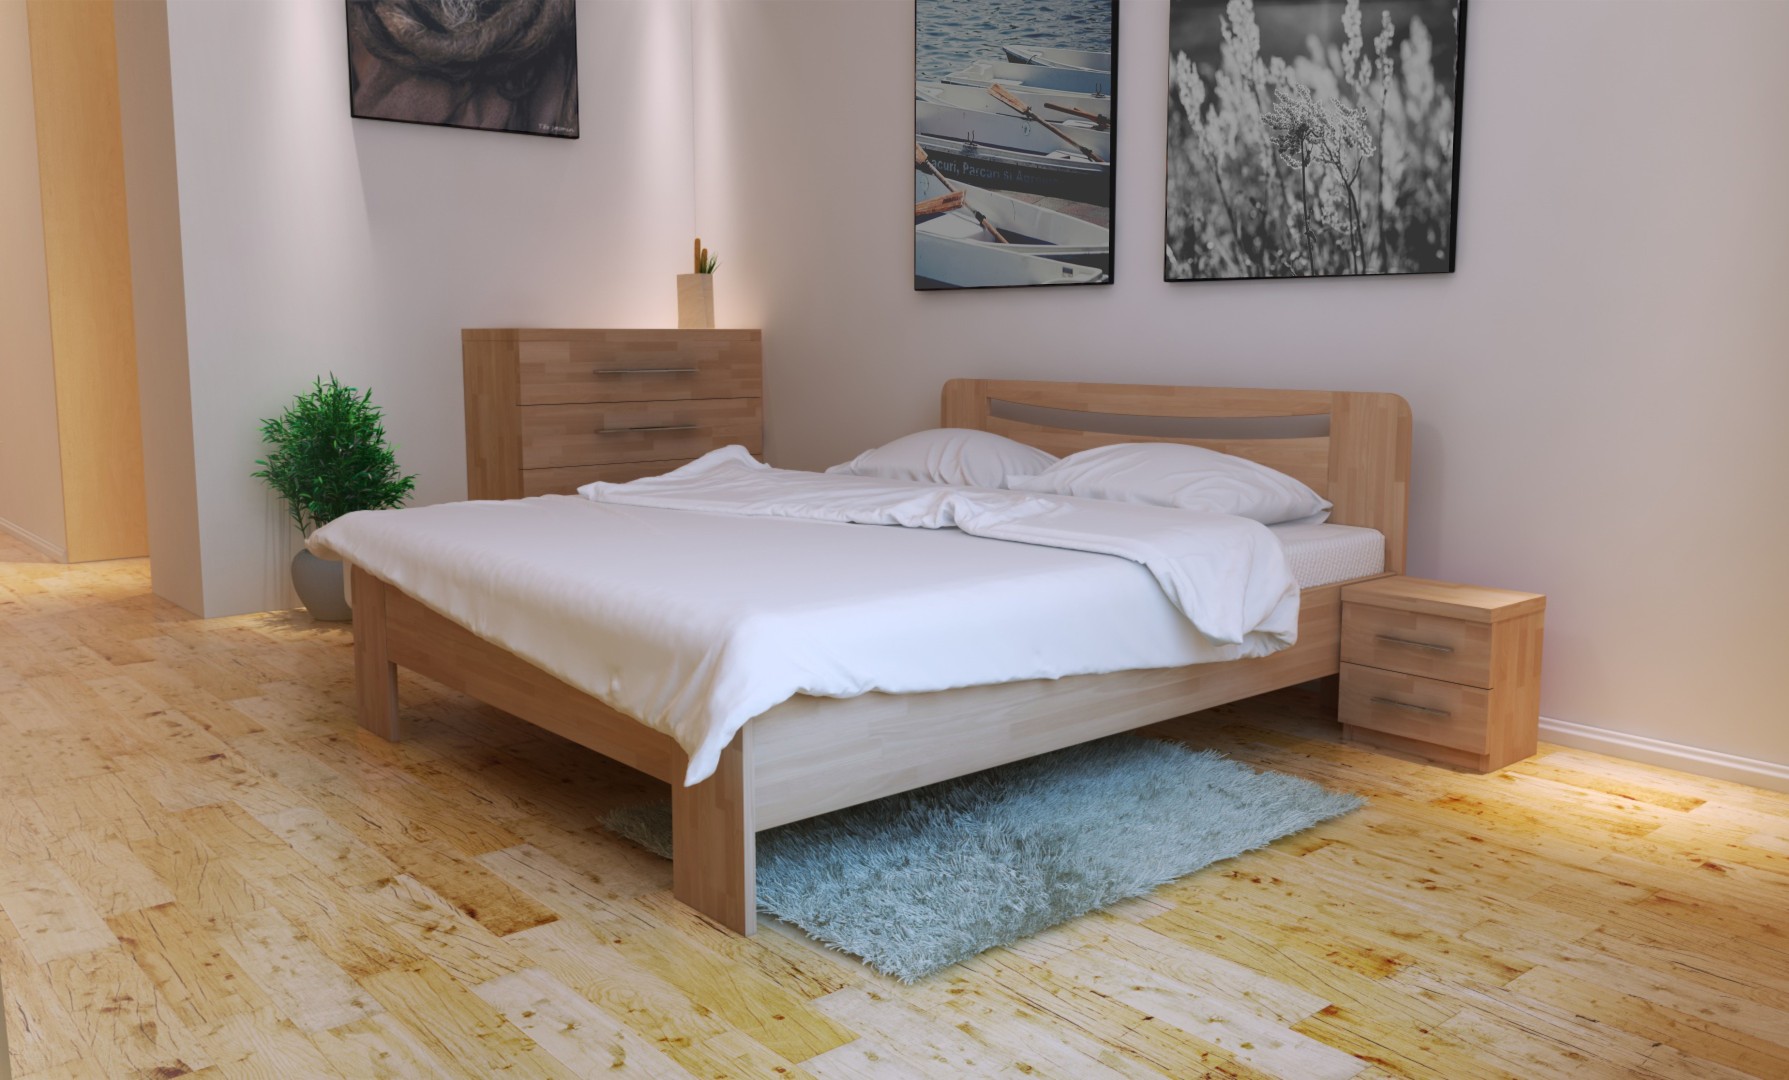 TEXPOL SOFIA - elegantní masivní dubová postel 140 x 200 cm, dub masiv